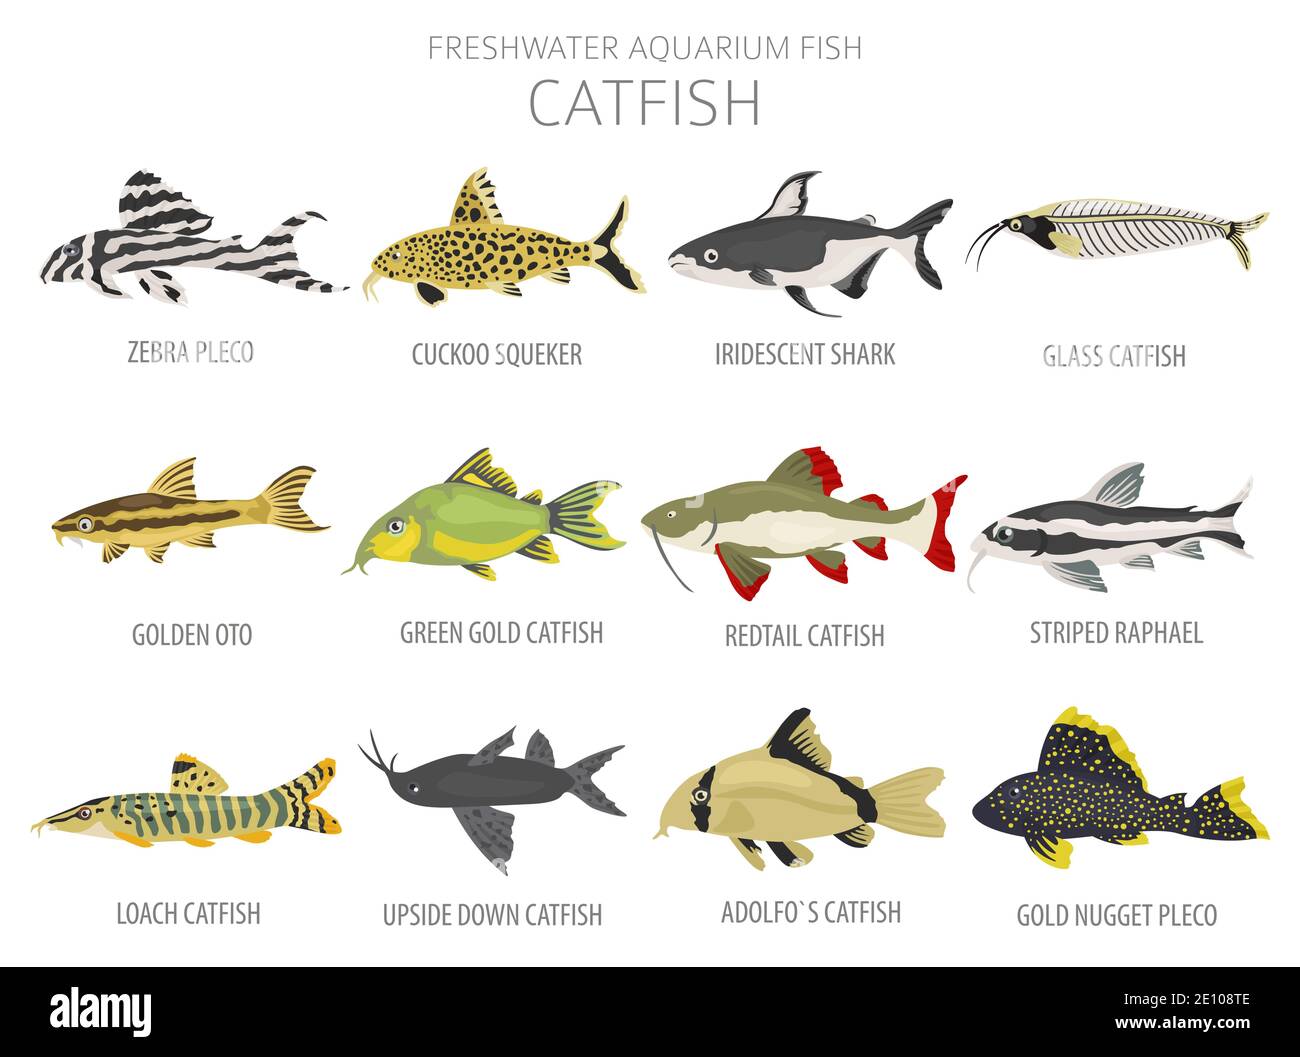 Catfish. Freshwater aquarium fish icon set flat style isolated on white.  Vector illustration Stock Vector Image & Art - Alamy